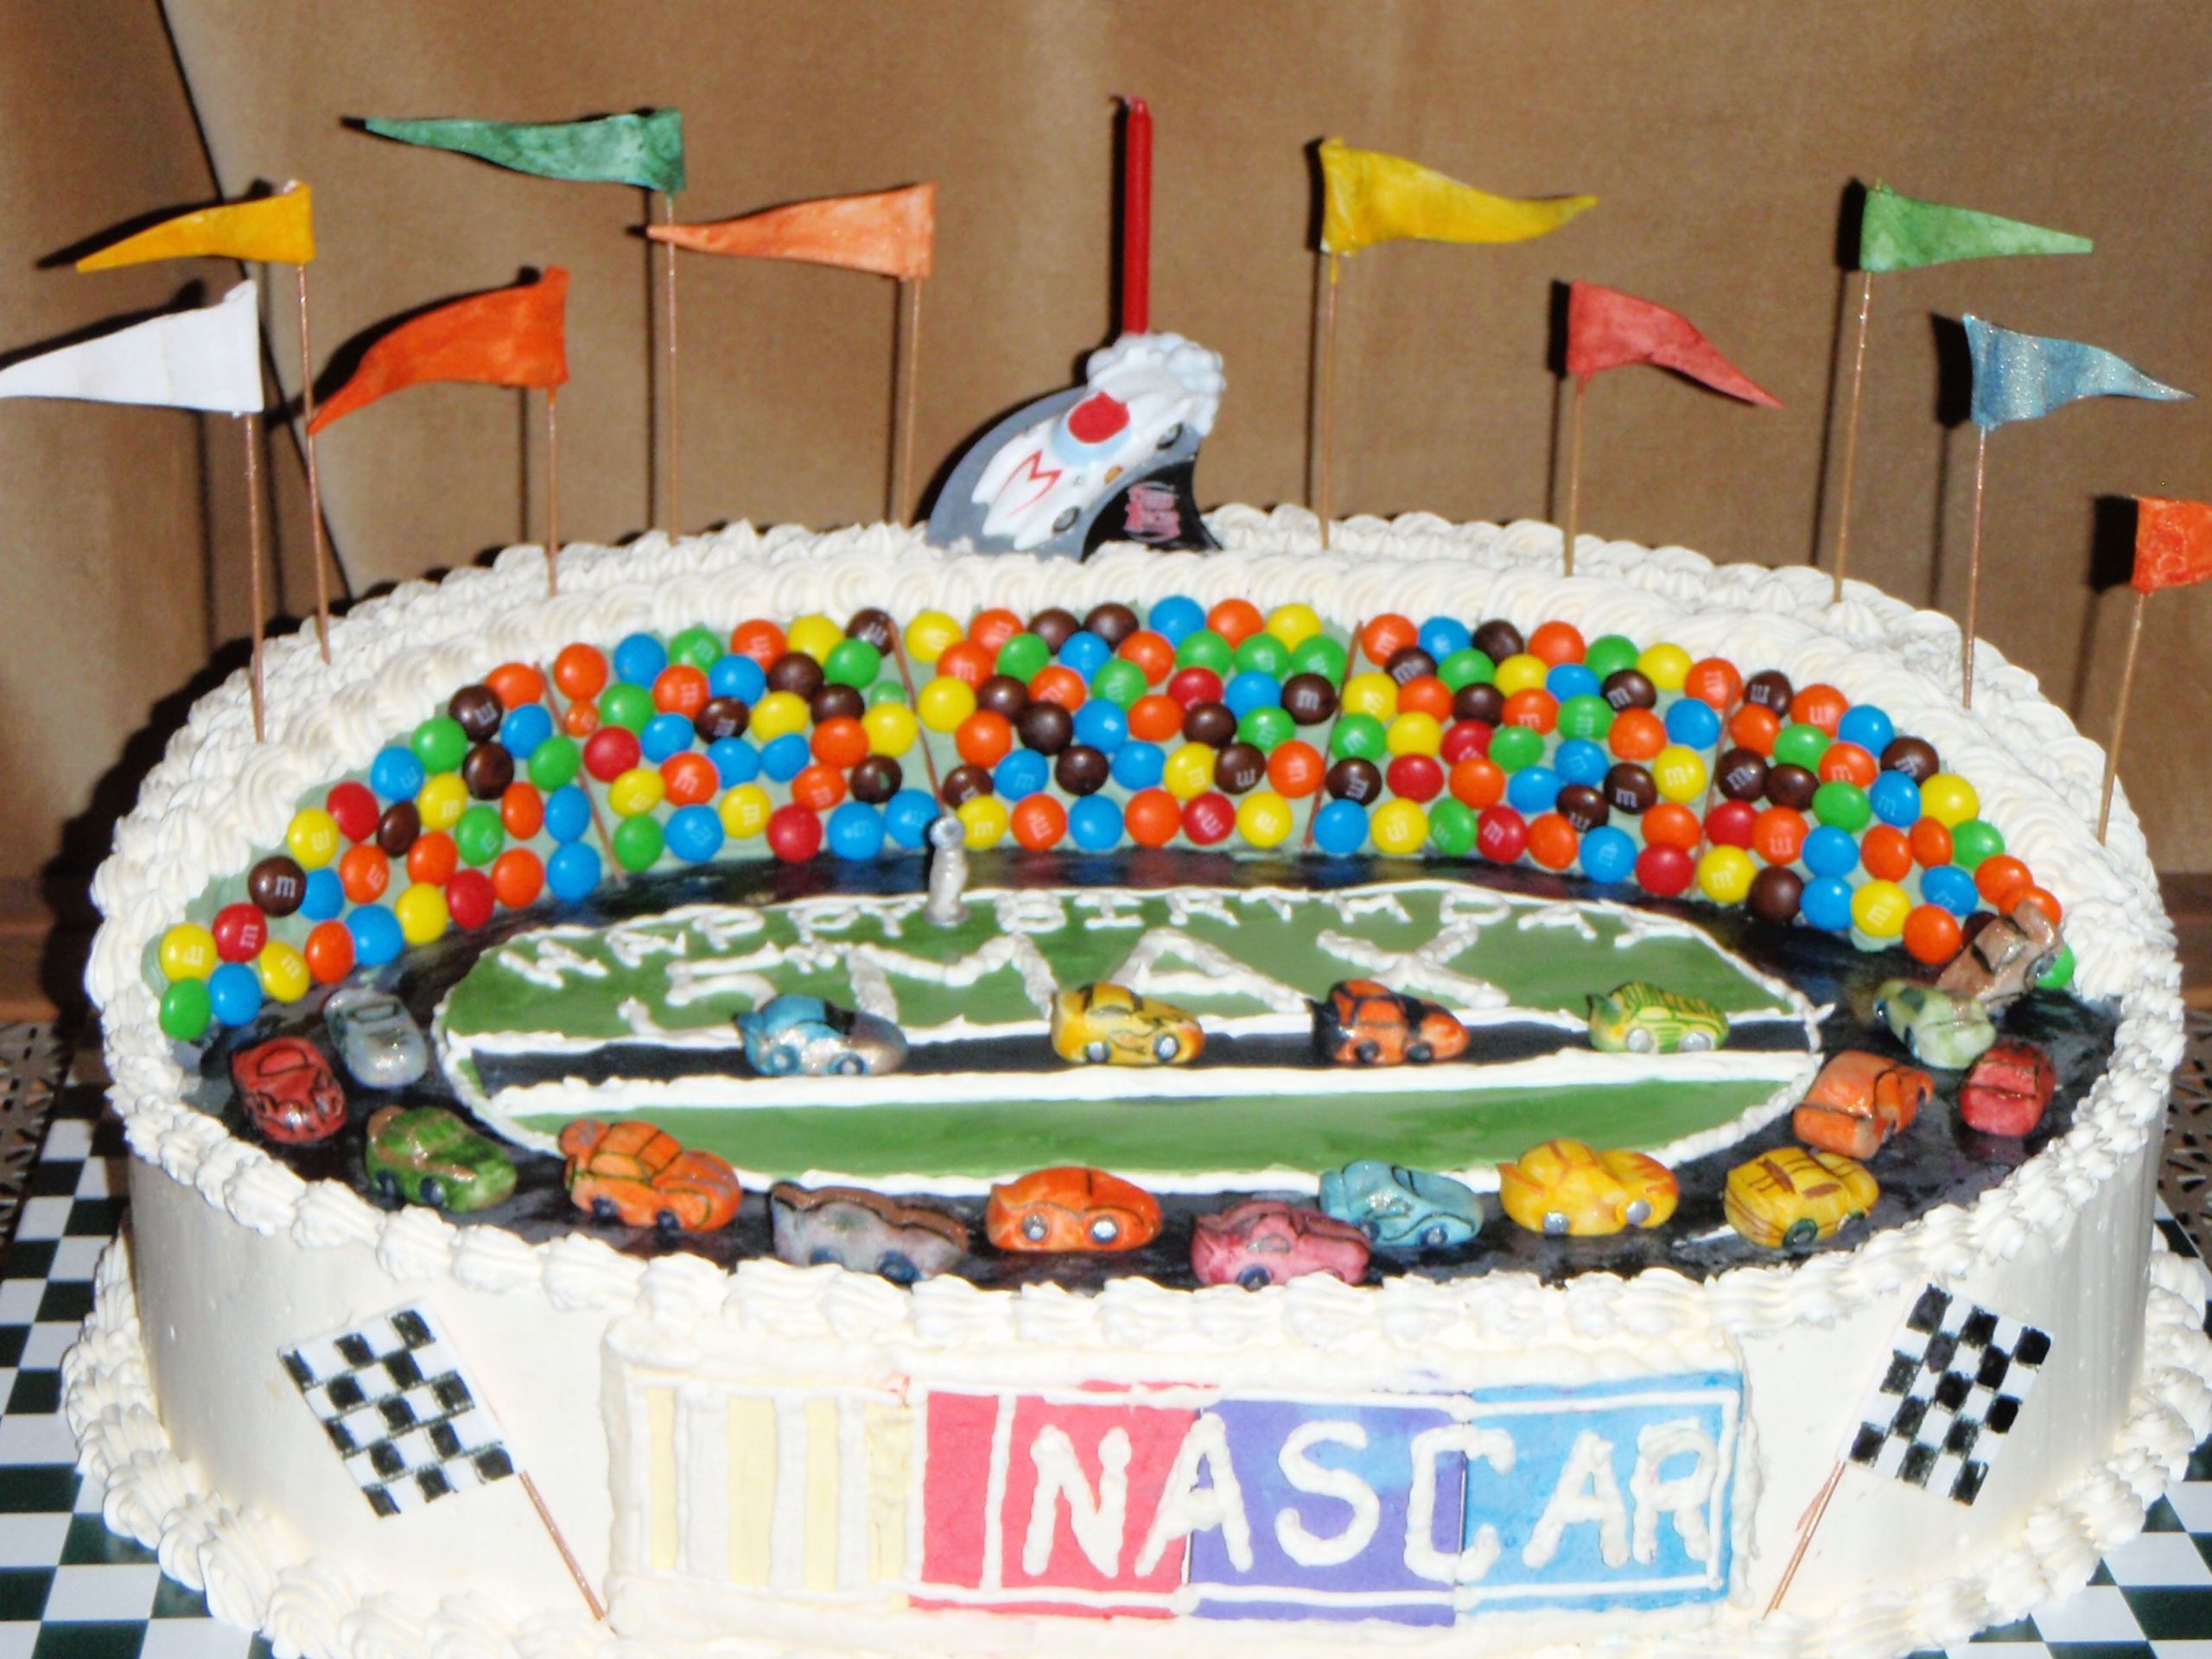 Nascar Birthday Cake
 Nascar Max s Birthday